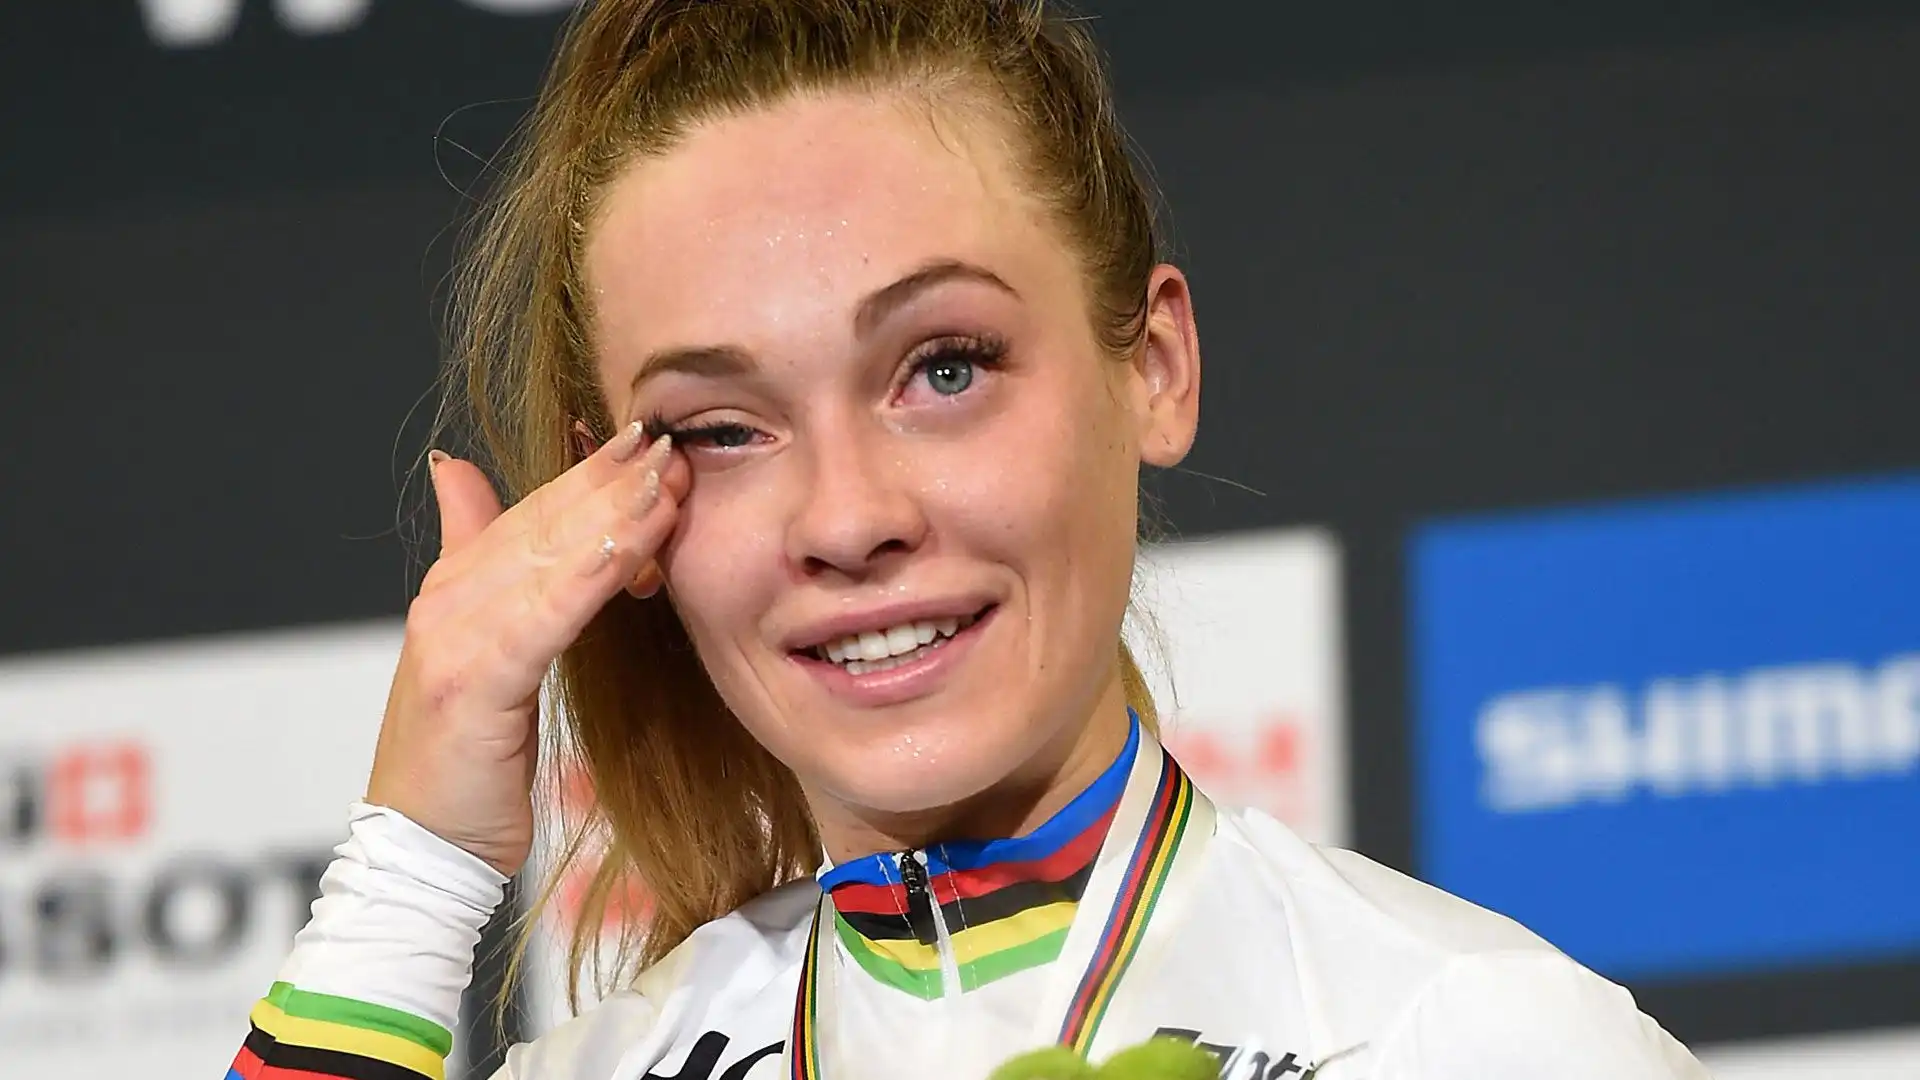 La campionessa di ciclismo è stata protagonista di una terribile caduta a Monaco